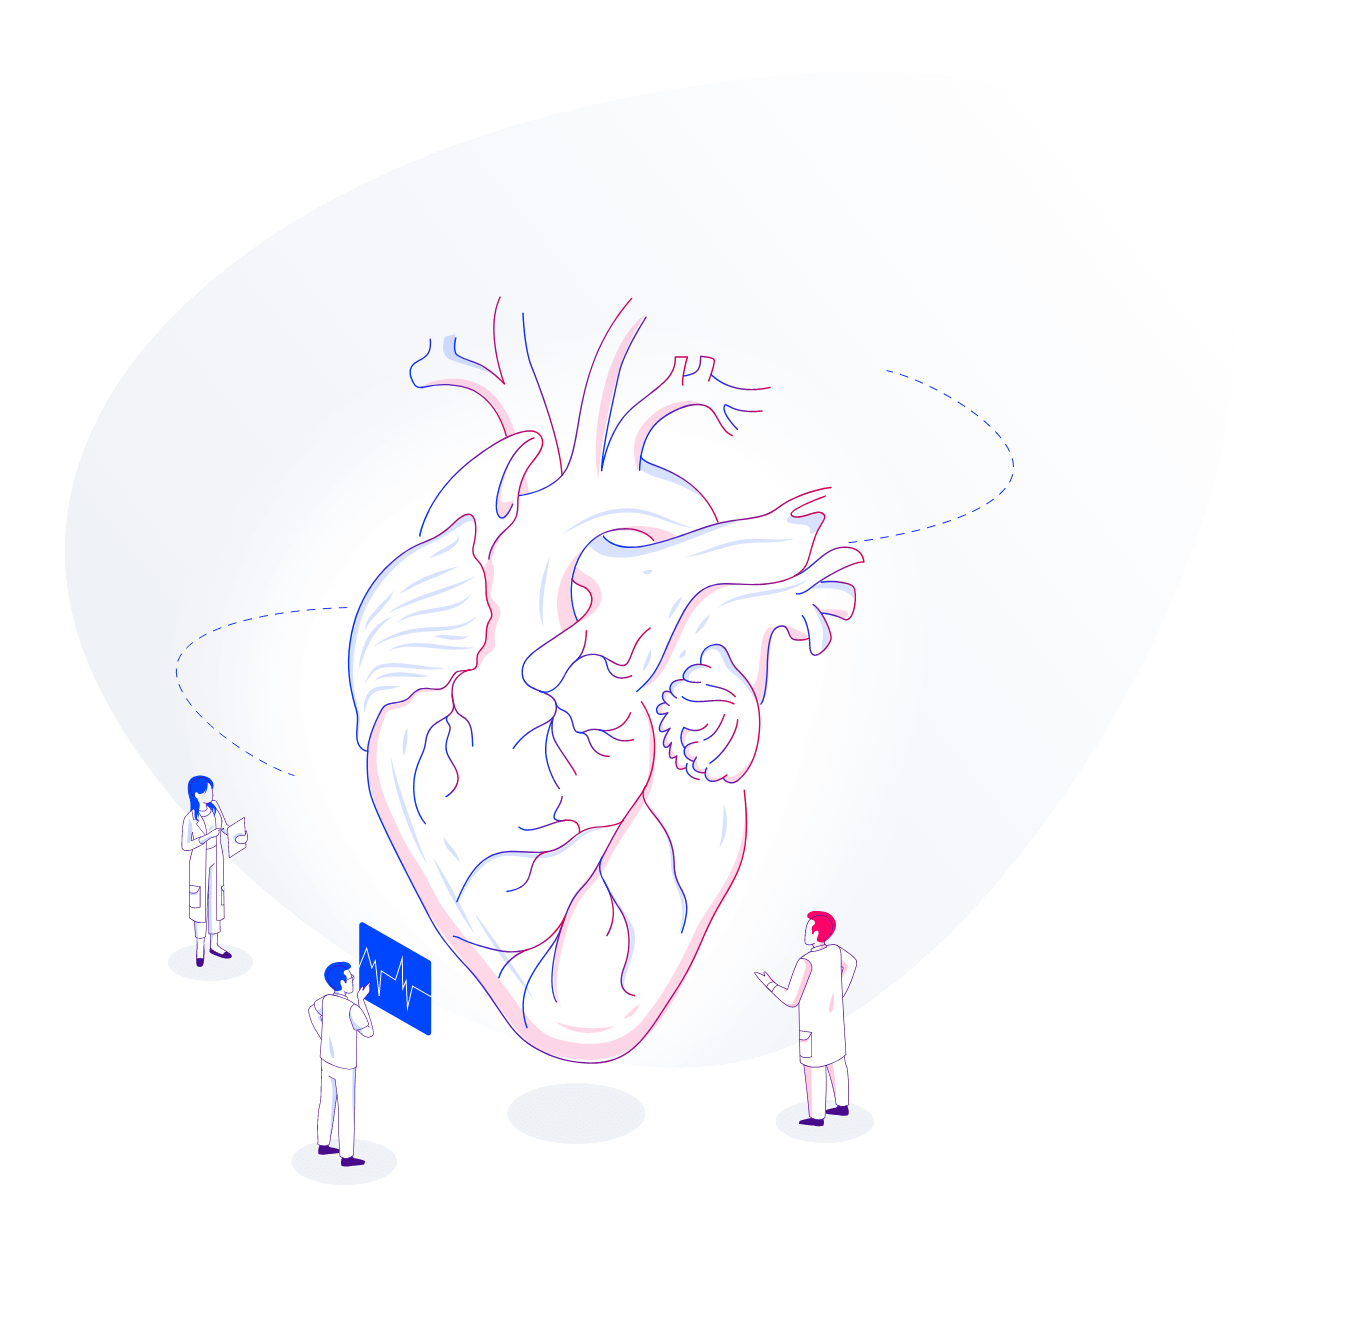 Uma representação da hemodiálise em desenho com um coração em 3D sendo estudado por três médicos.